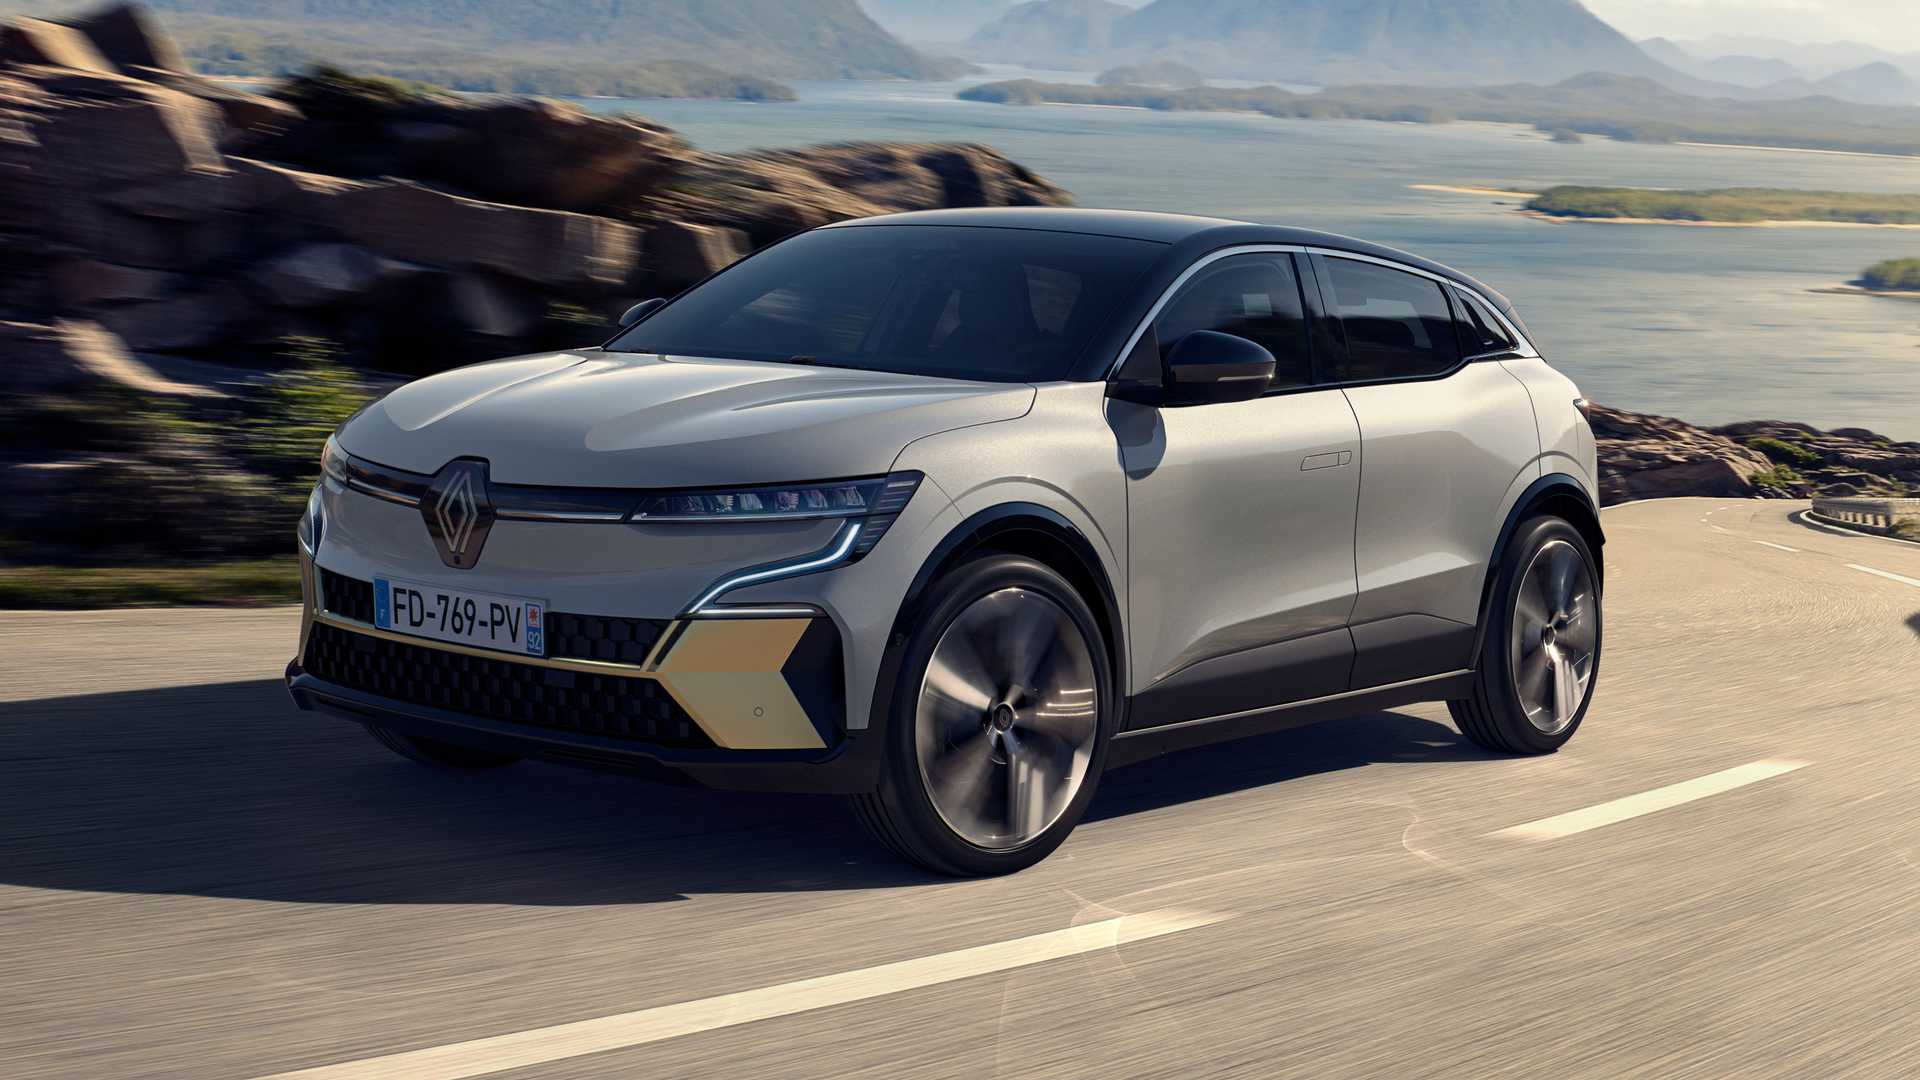 2022 Renault Megan e-tech elektrische auto wordt geleverd met een vernieuwde.